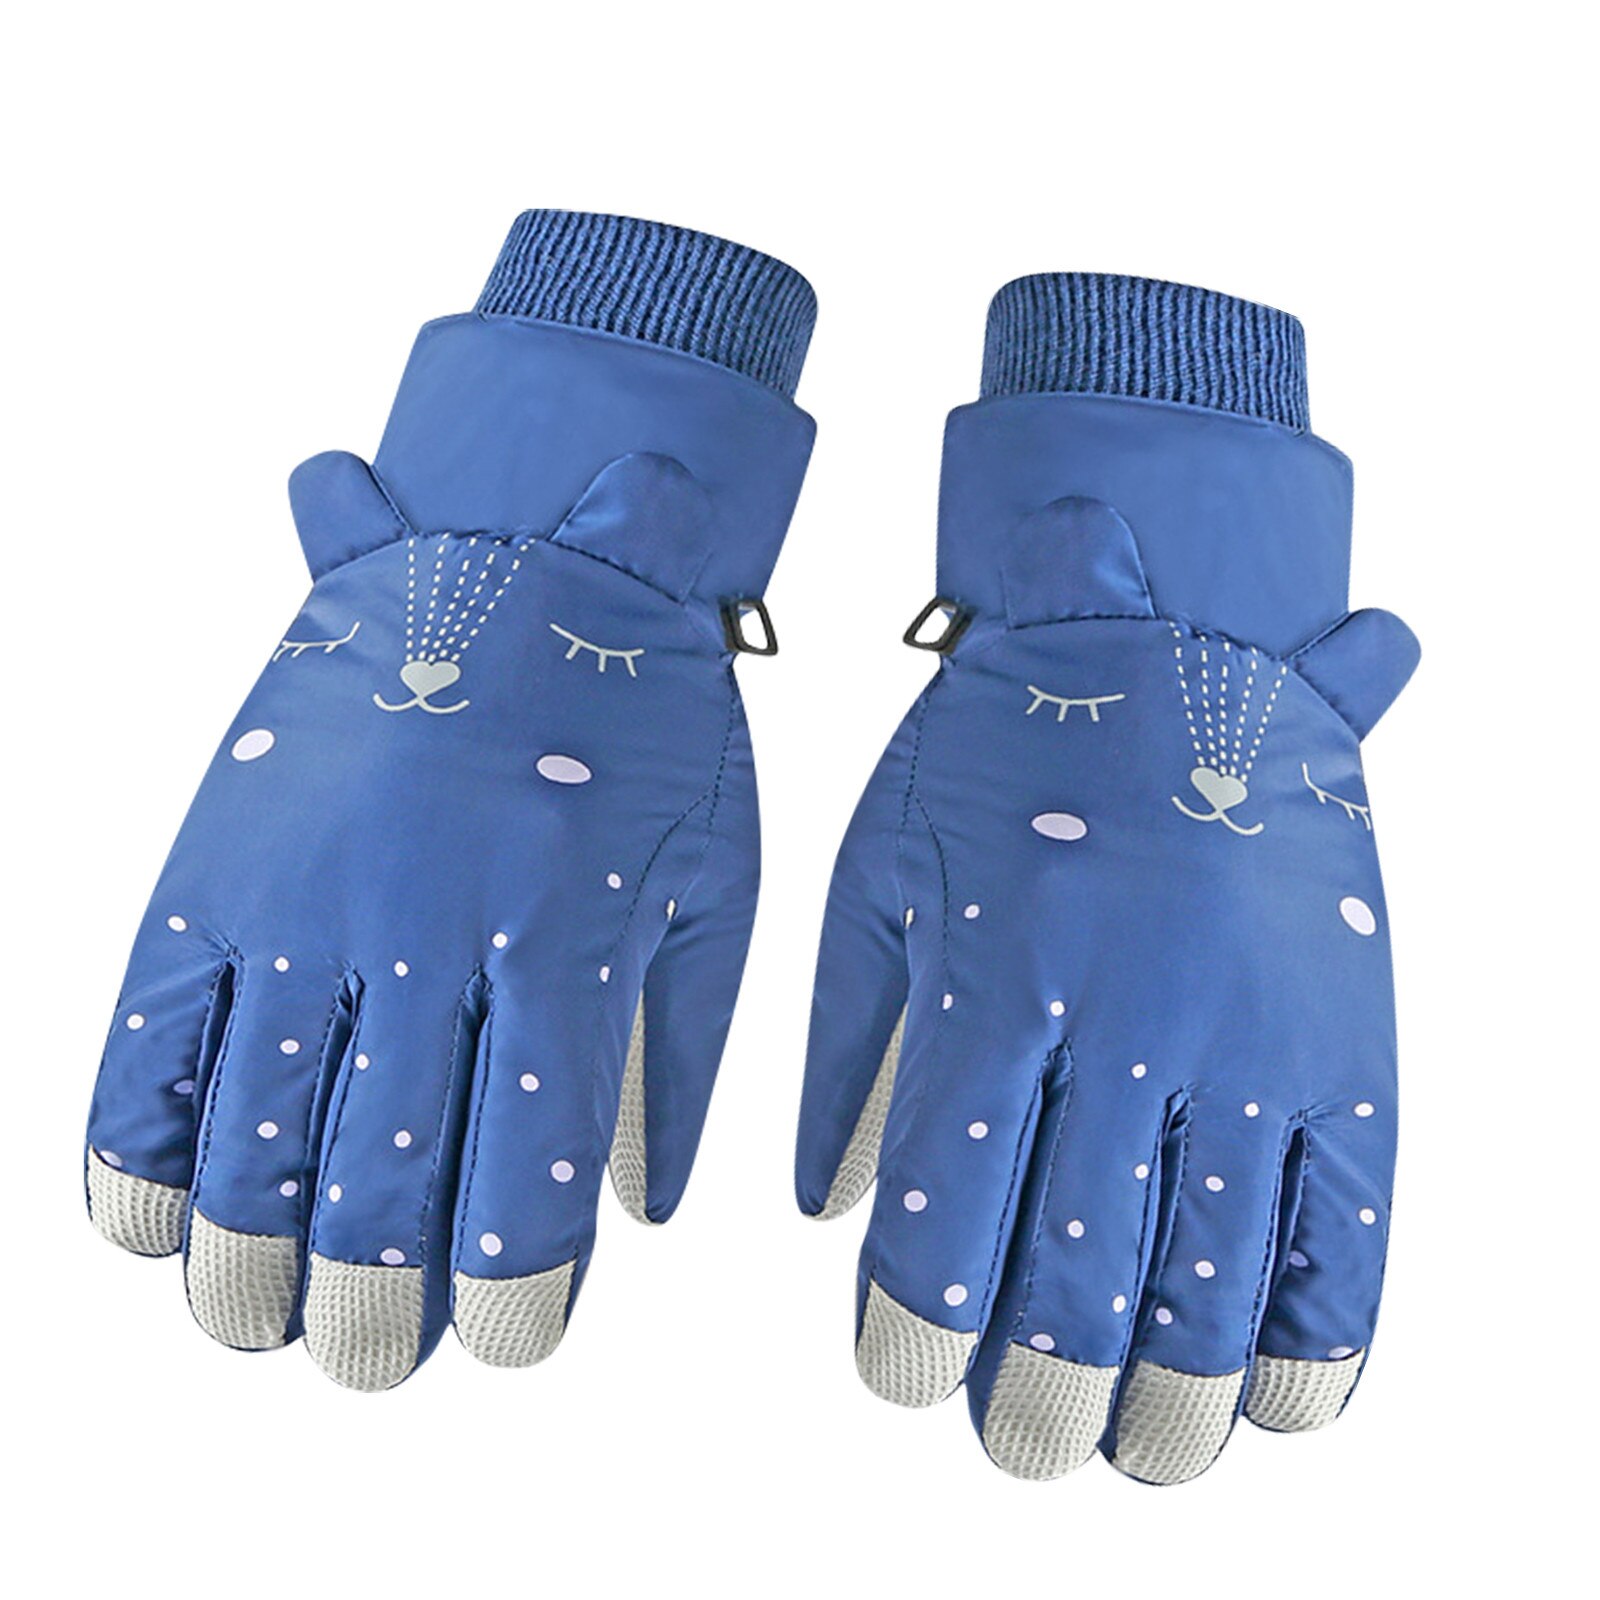 Children Ski Gloves Winter Warm Gloves Boys Girls Waterproof Windproof Non-slip Snow Mittens Snowboard Extended Wrist Gloves: Blue